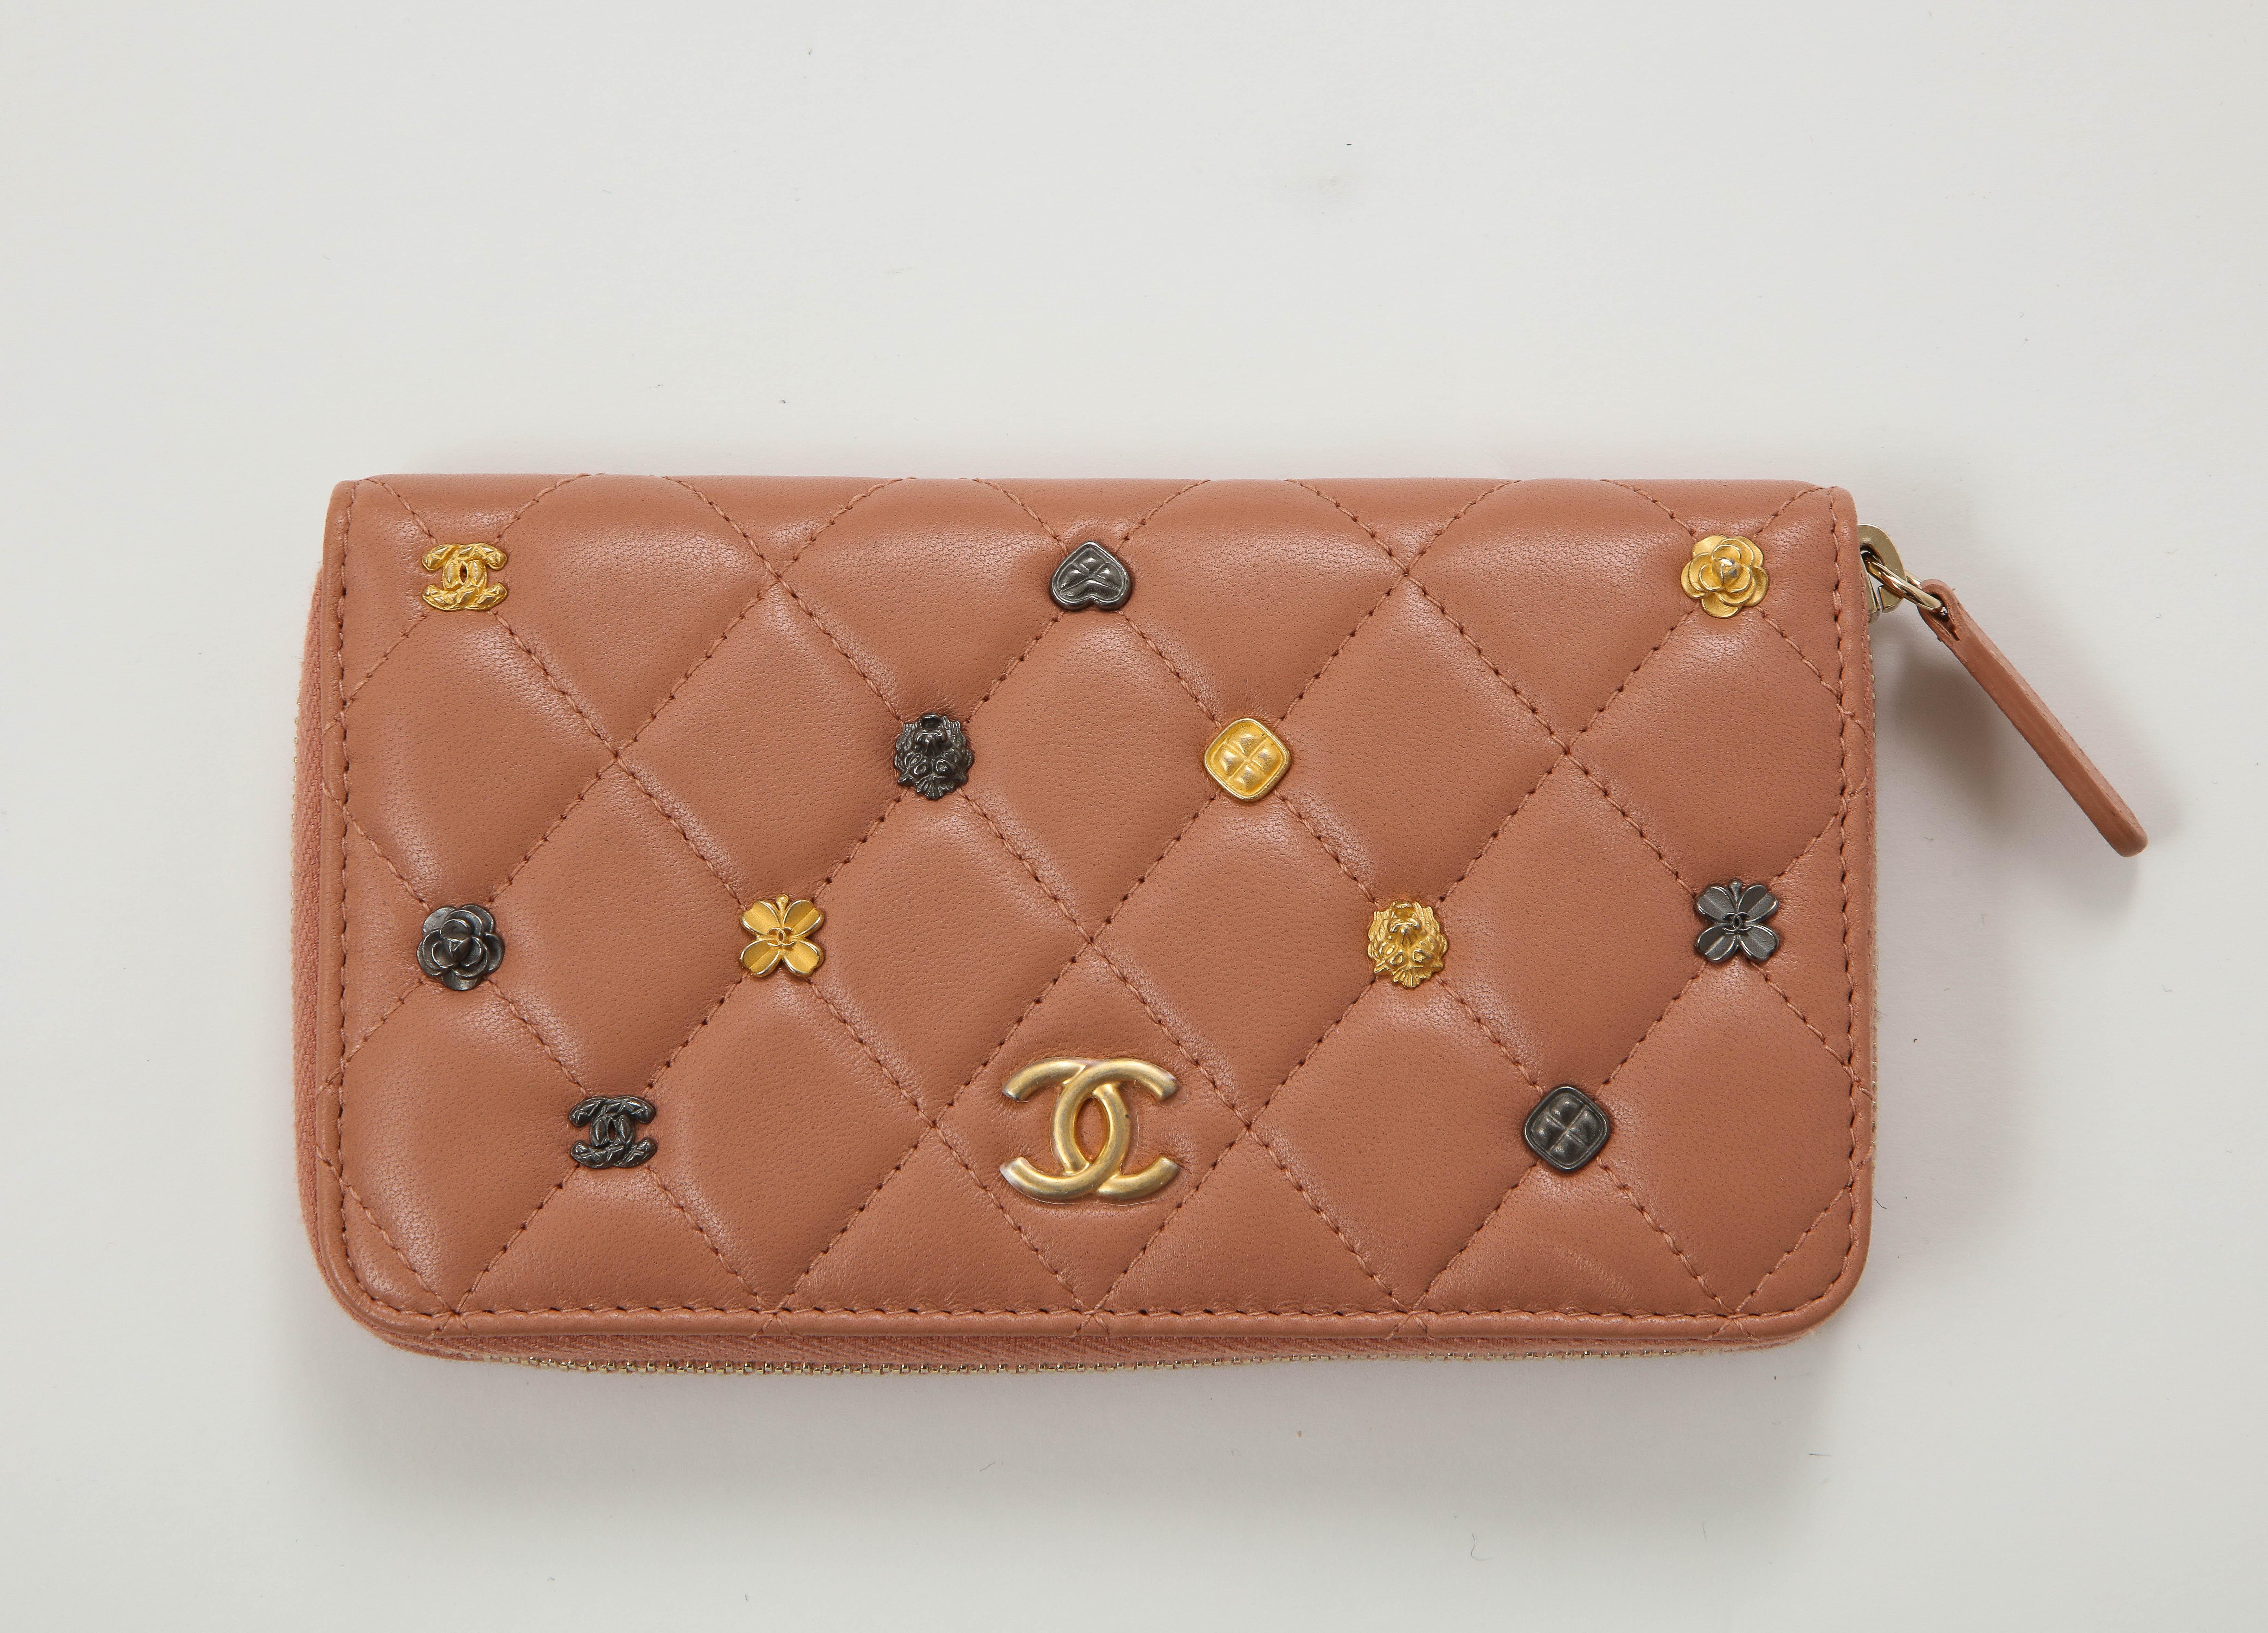 Ikonische gesteppte Brieftasche mit Rautenmuster aus rosafarbenem Lammleder mit Miniatur-Chanel-Charmen auf der Vorderseite. 2 Fächer mit einer mittleren Reißverschlusstasche. Neu, nie getragen, kommt mit Box und Aufbewahrungstasche.